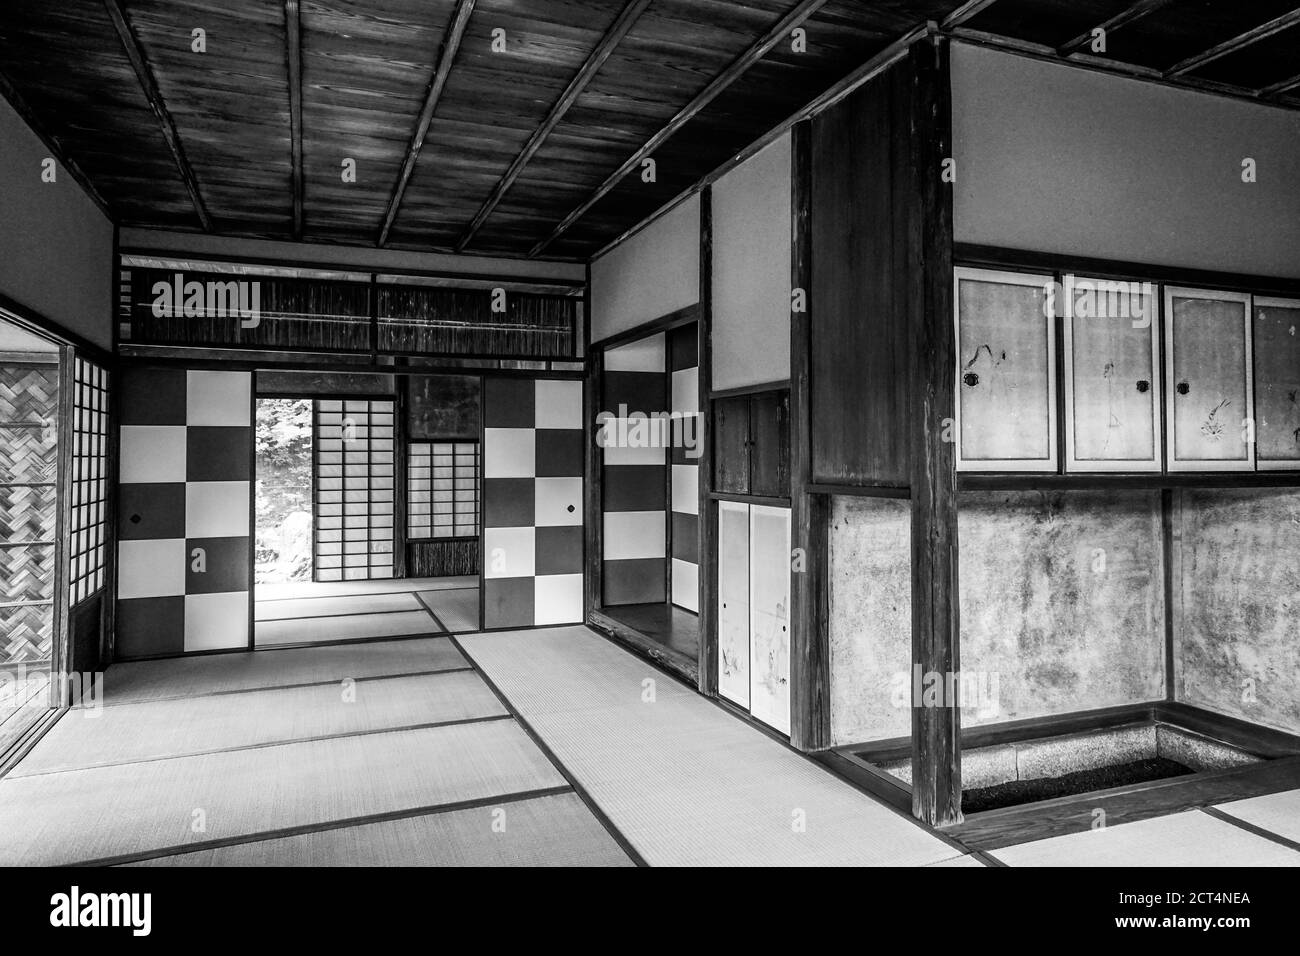 Salon de thé Shokintei au jardin japonais de la villa impériale de Katsura, Kyoto, Japon Banque D'Images